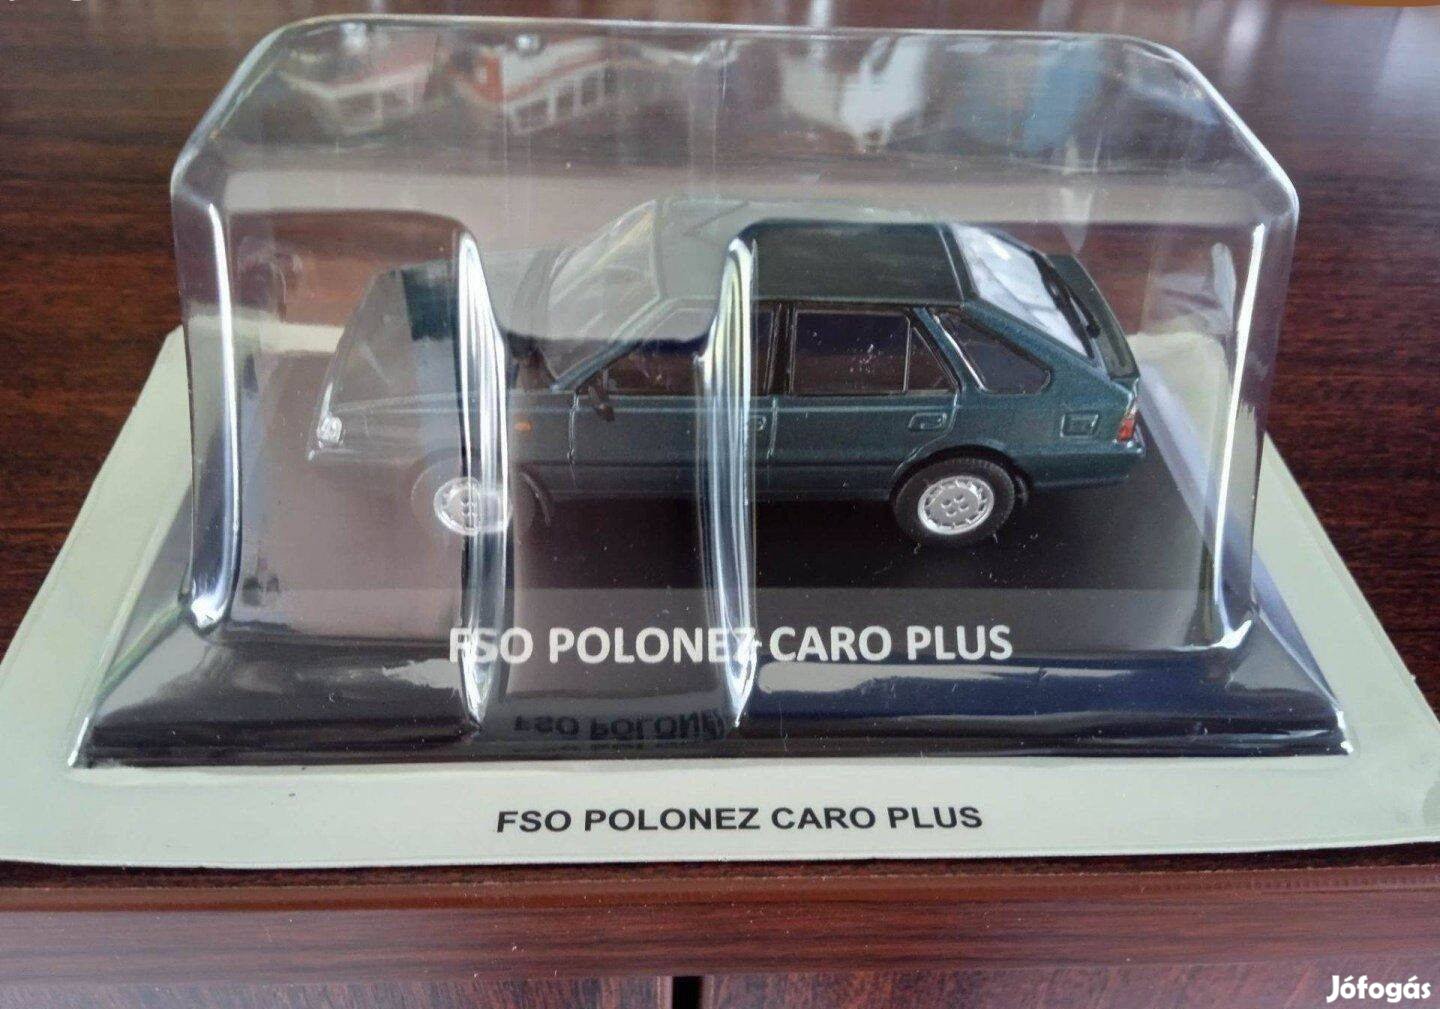 Polonez Caro plus kisauto modell 1/43 Eladó